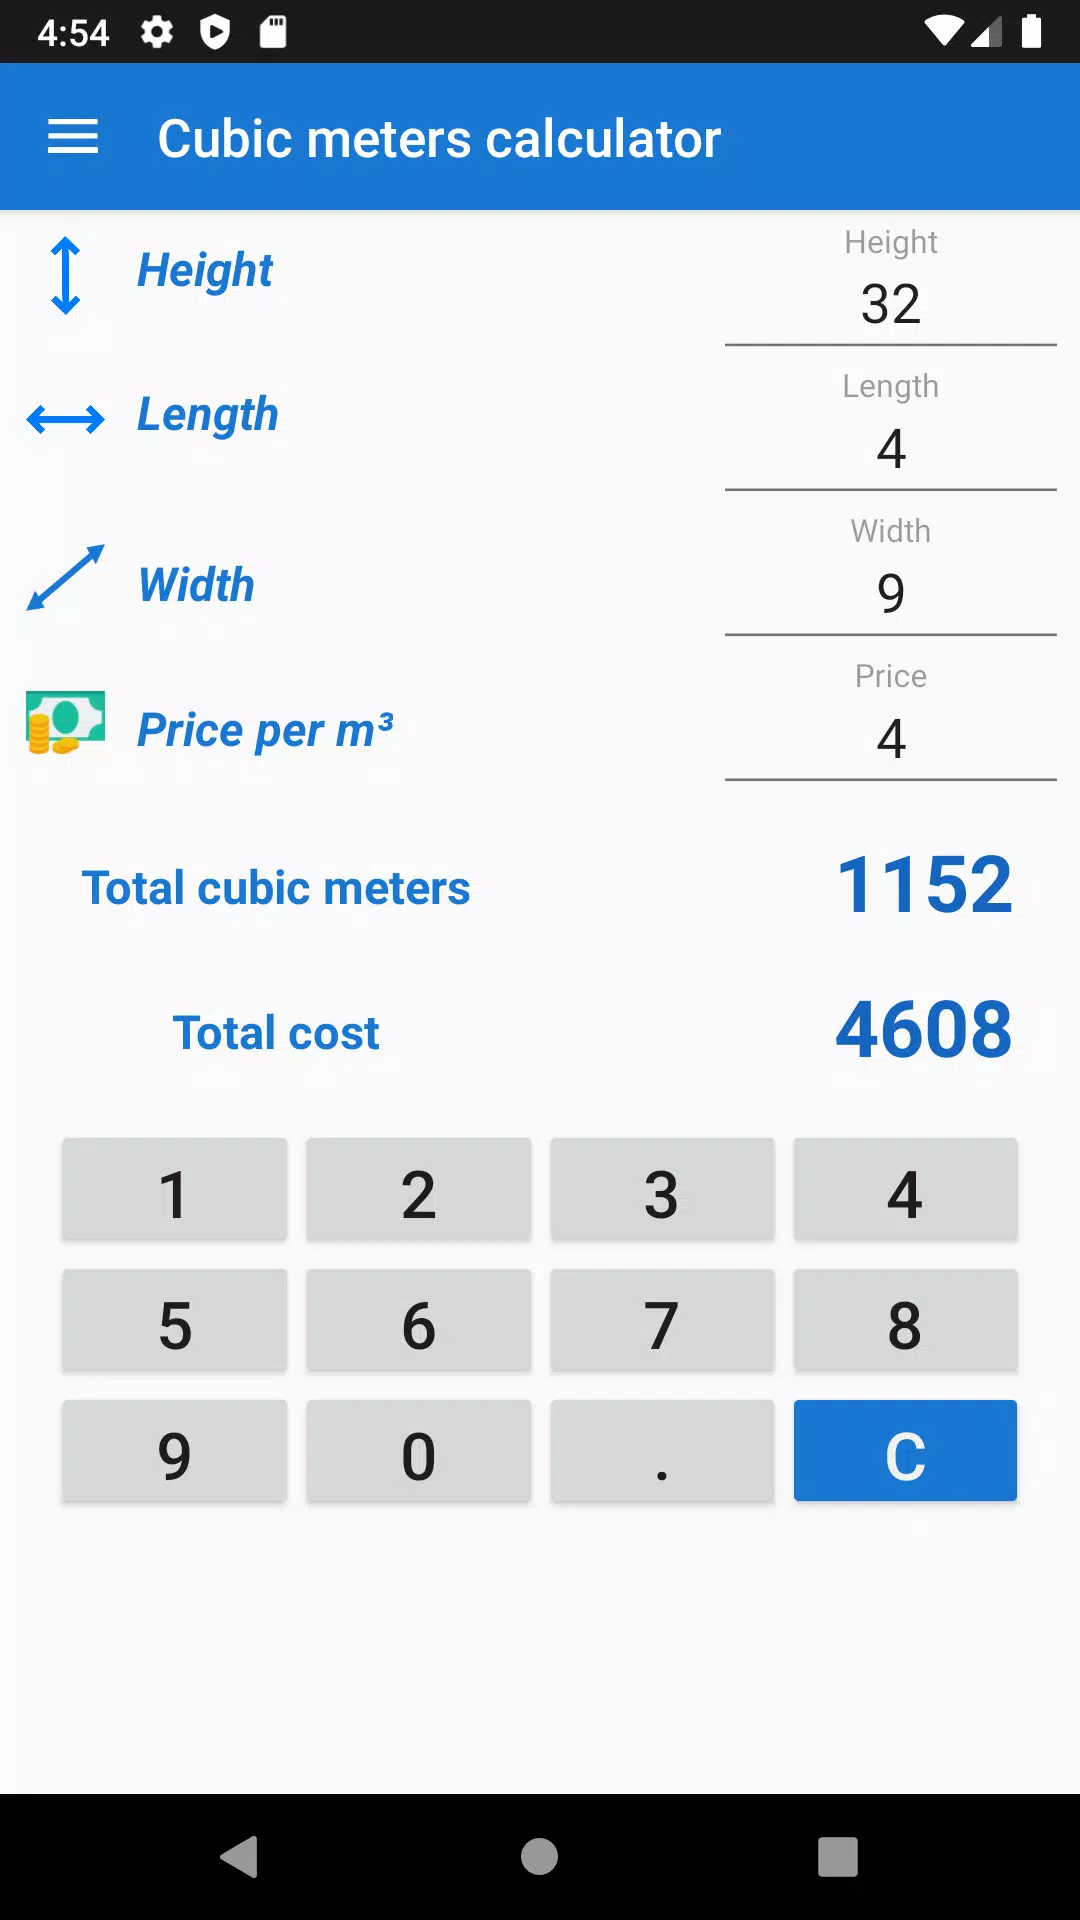 Calculadora de metros cúbicos for Android - APK Download